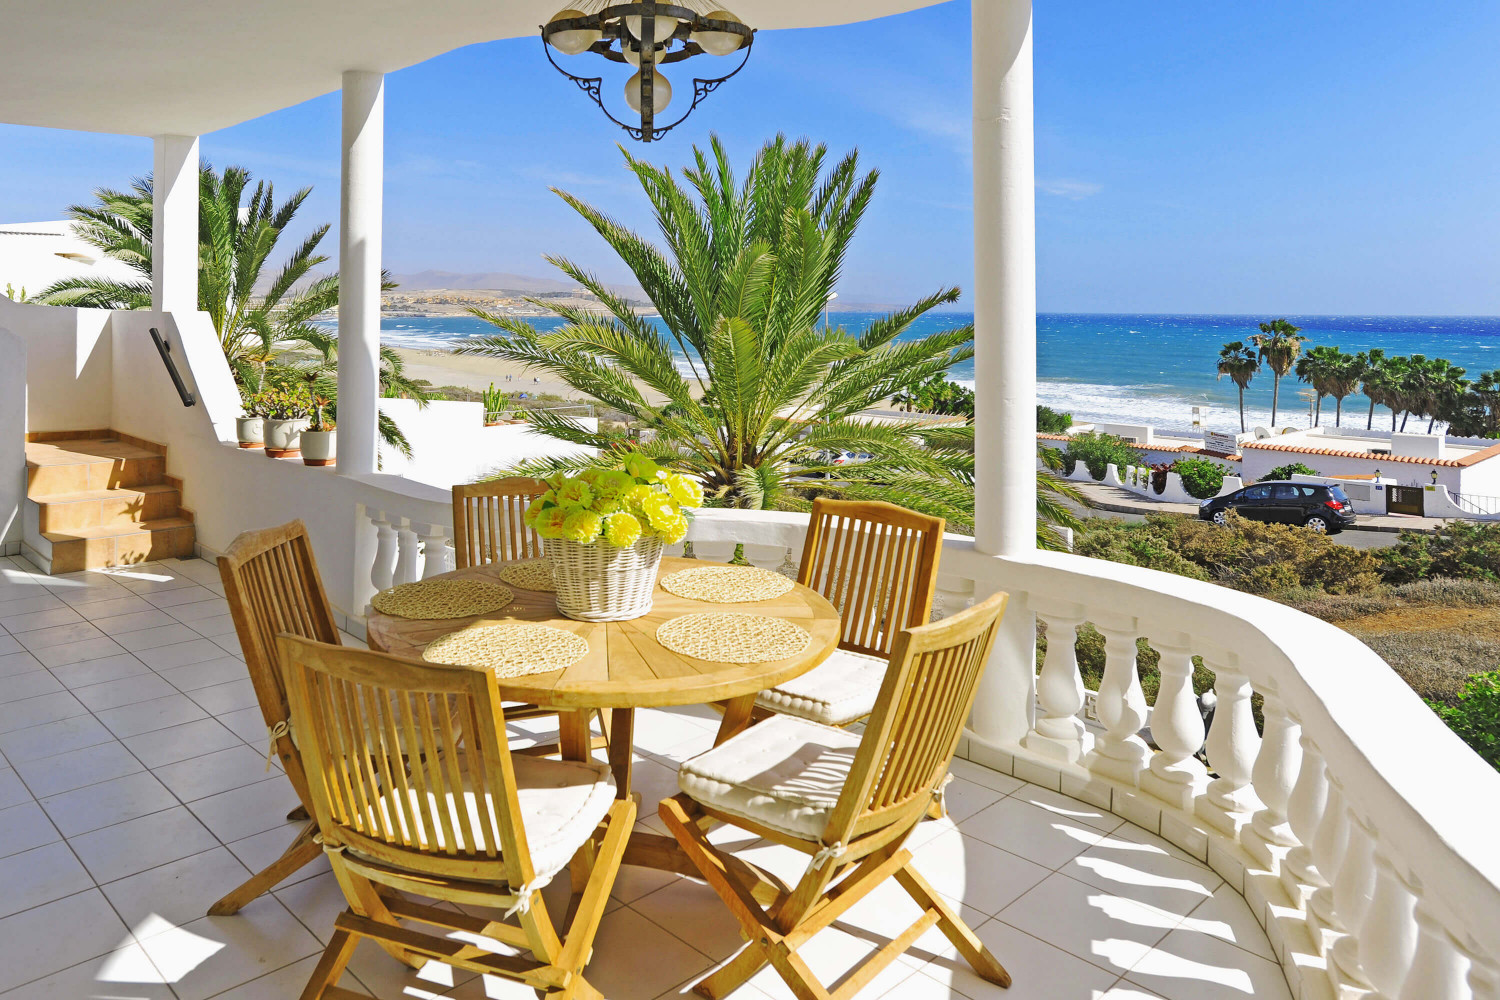 Schönes Ferienhaus direkt am Strand in Costa Calma, im mediterranen Stil eingerichtet, mit unschlagbarer Aussicht